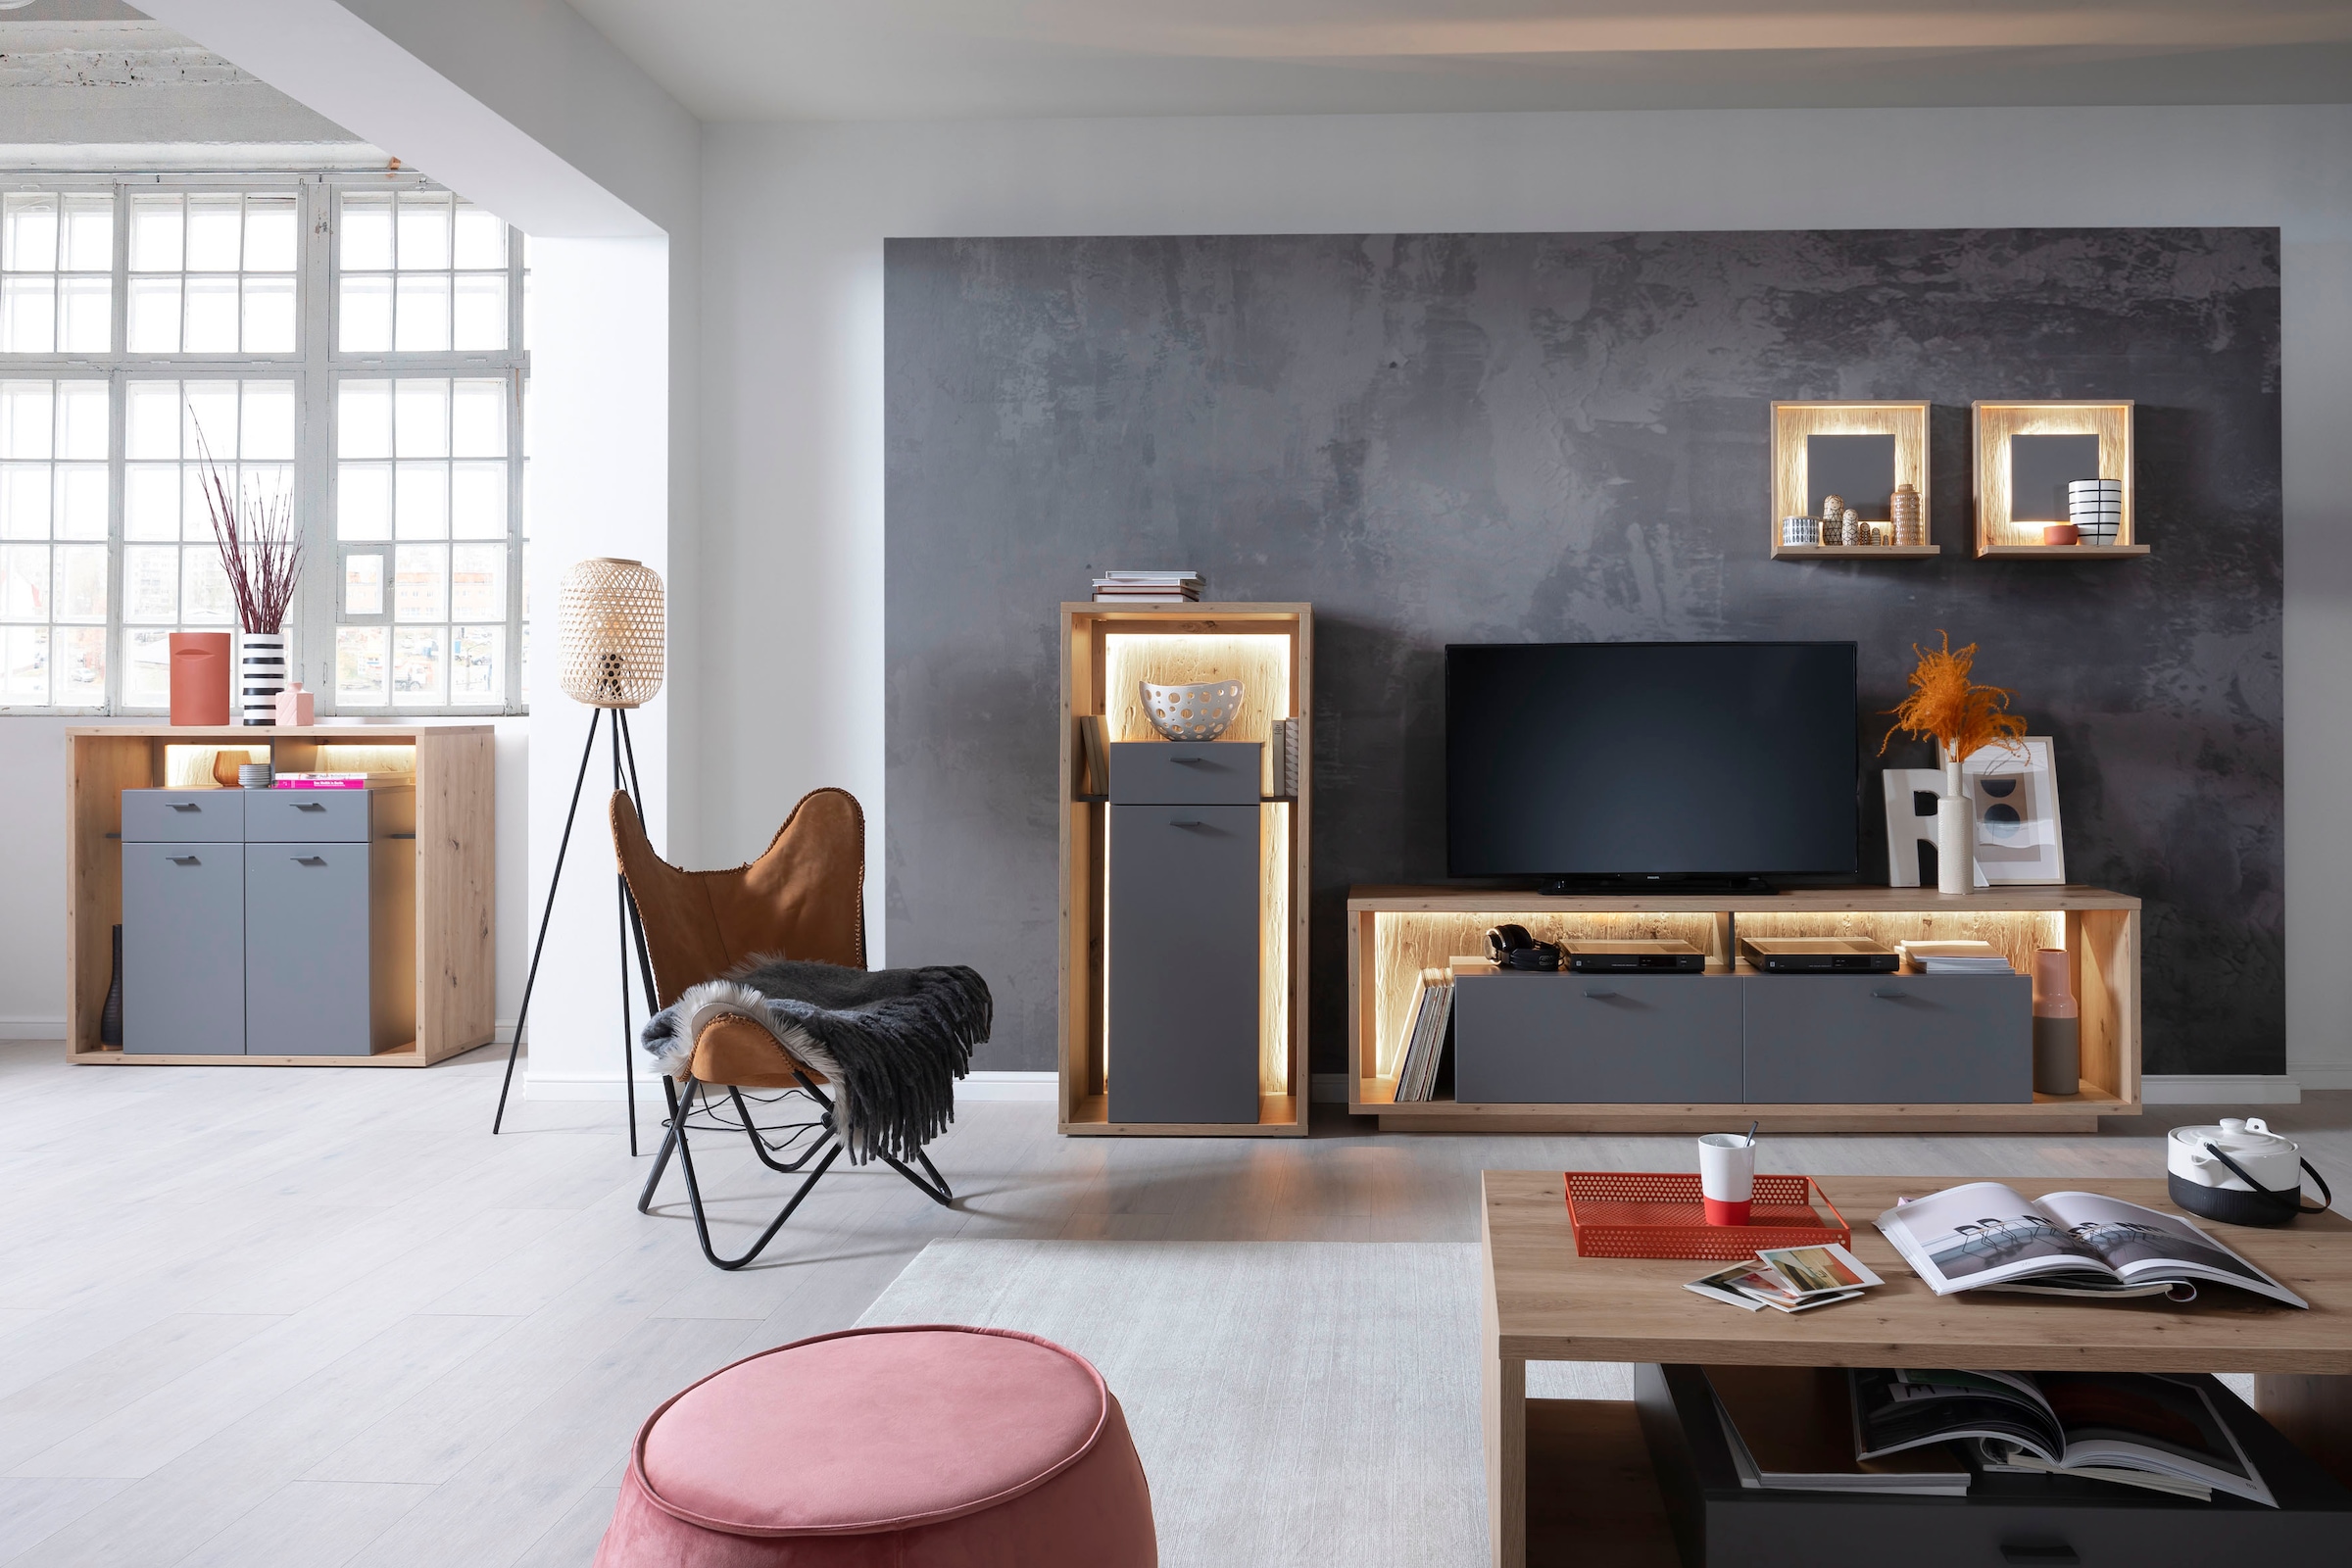 MCA furniture Wohnwand »Lizzano«, (Set, 4 St.), im modernen Landhausstil mit 3-D Rückwand, wahlweise mit Beleuchtung